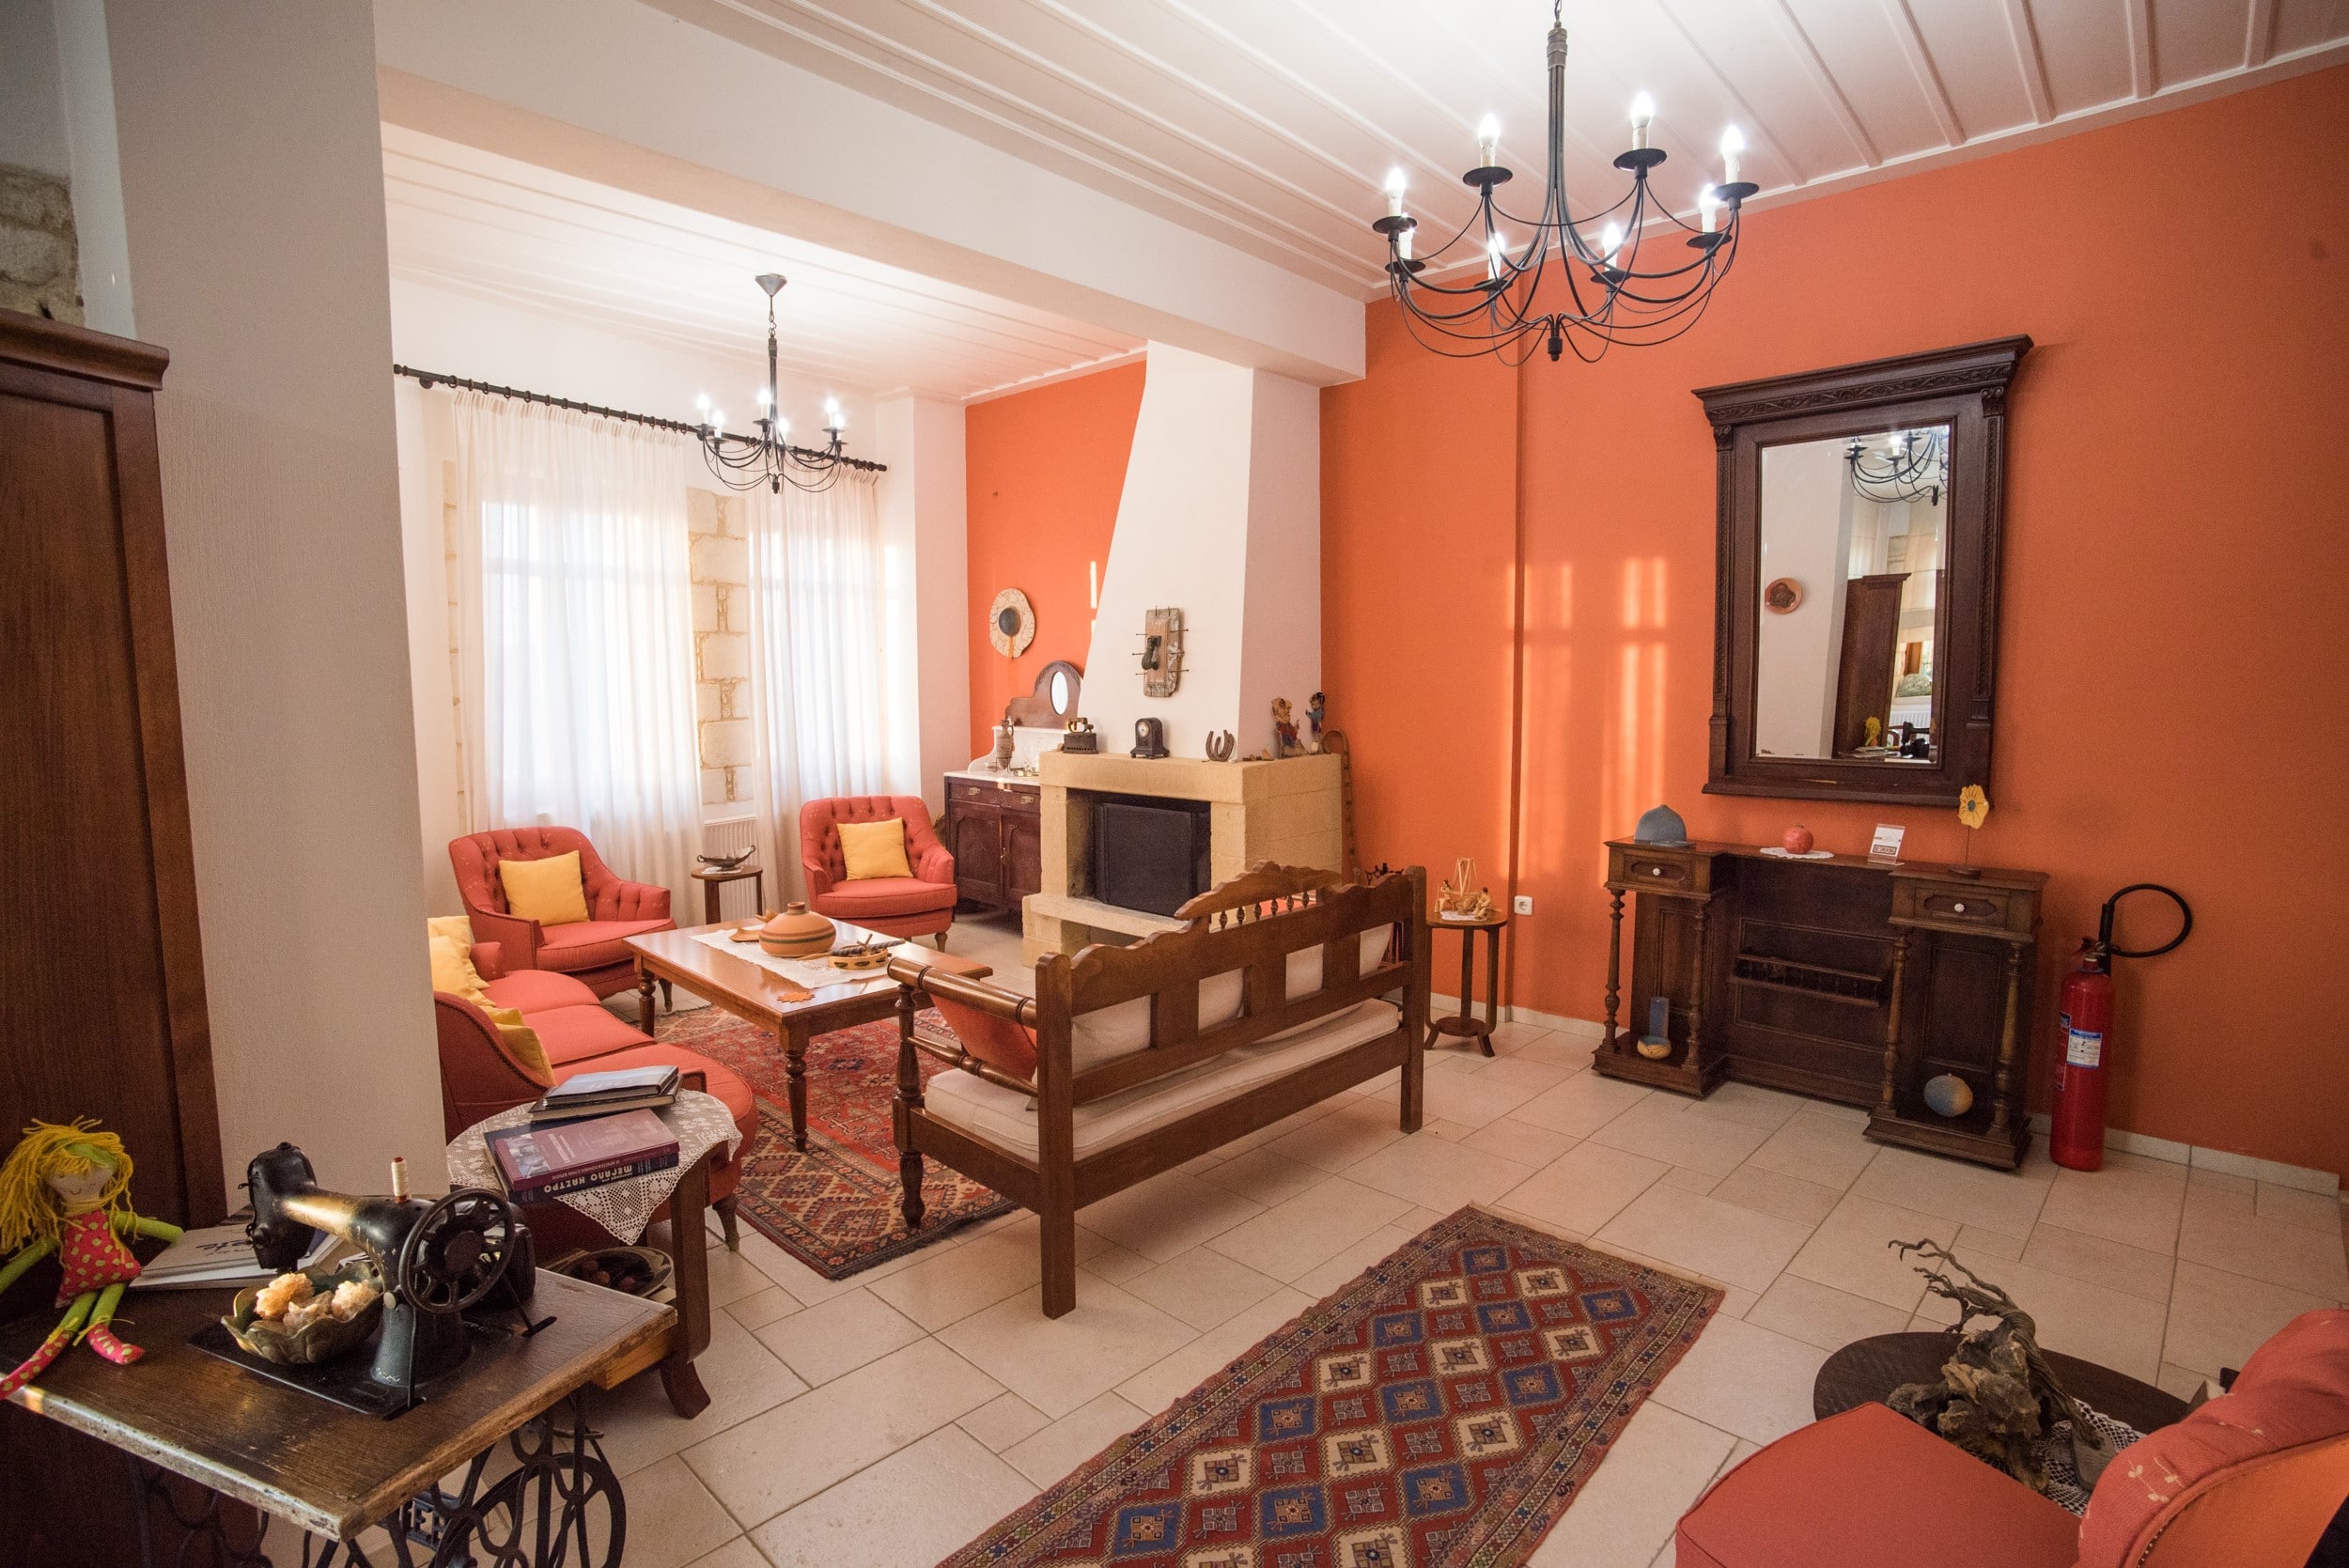 Katalagari Country Suites in Crete Hotel